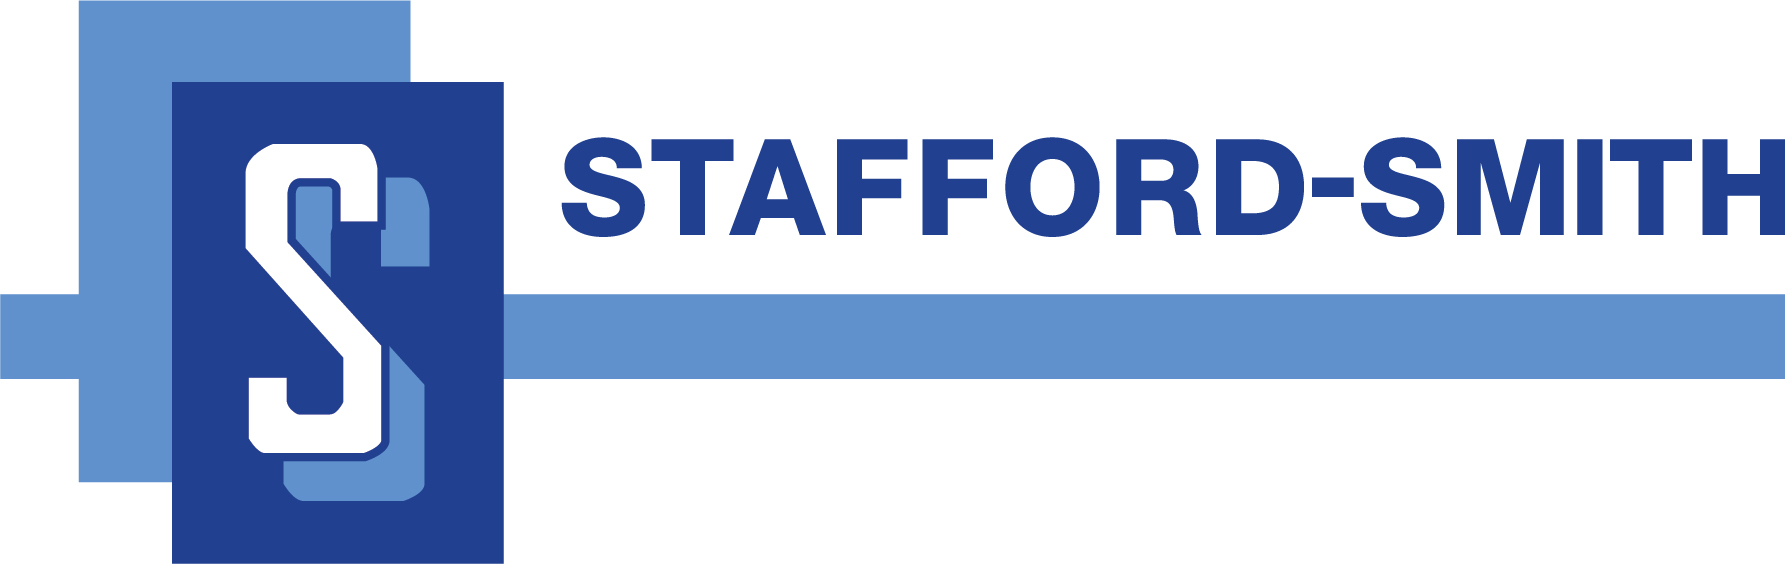 Stafford-Smith Inc.